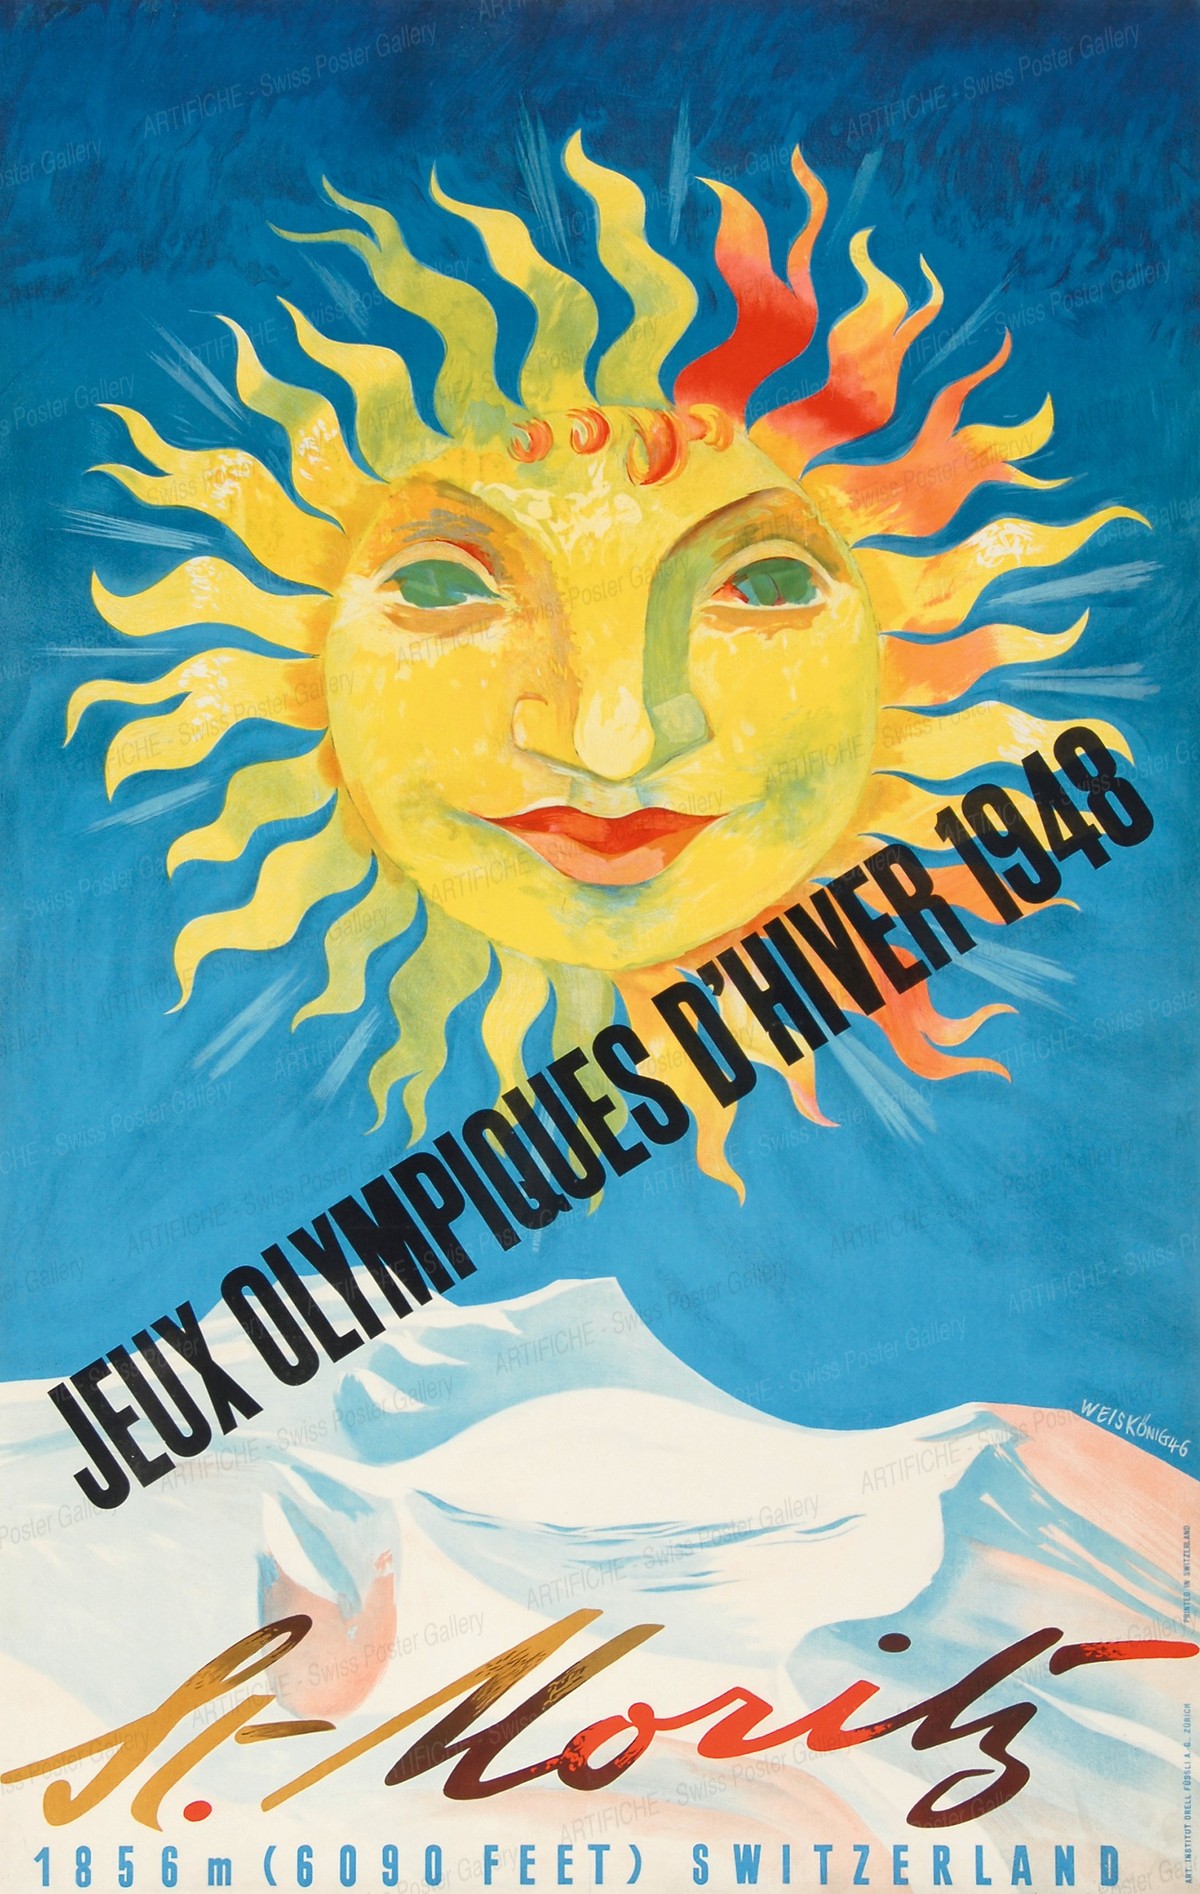 St. Moritz – Jeux Olympiques d’Hiver 1948 – 1856 m (6090 feet) Switzerland, Werner Weiskönig